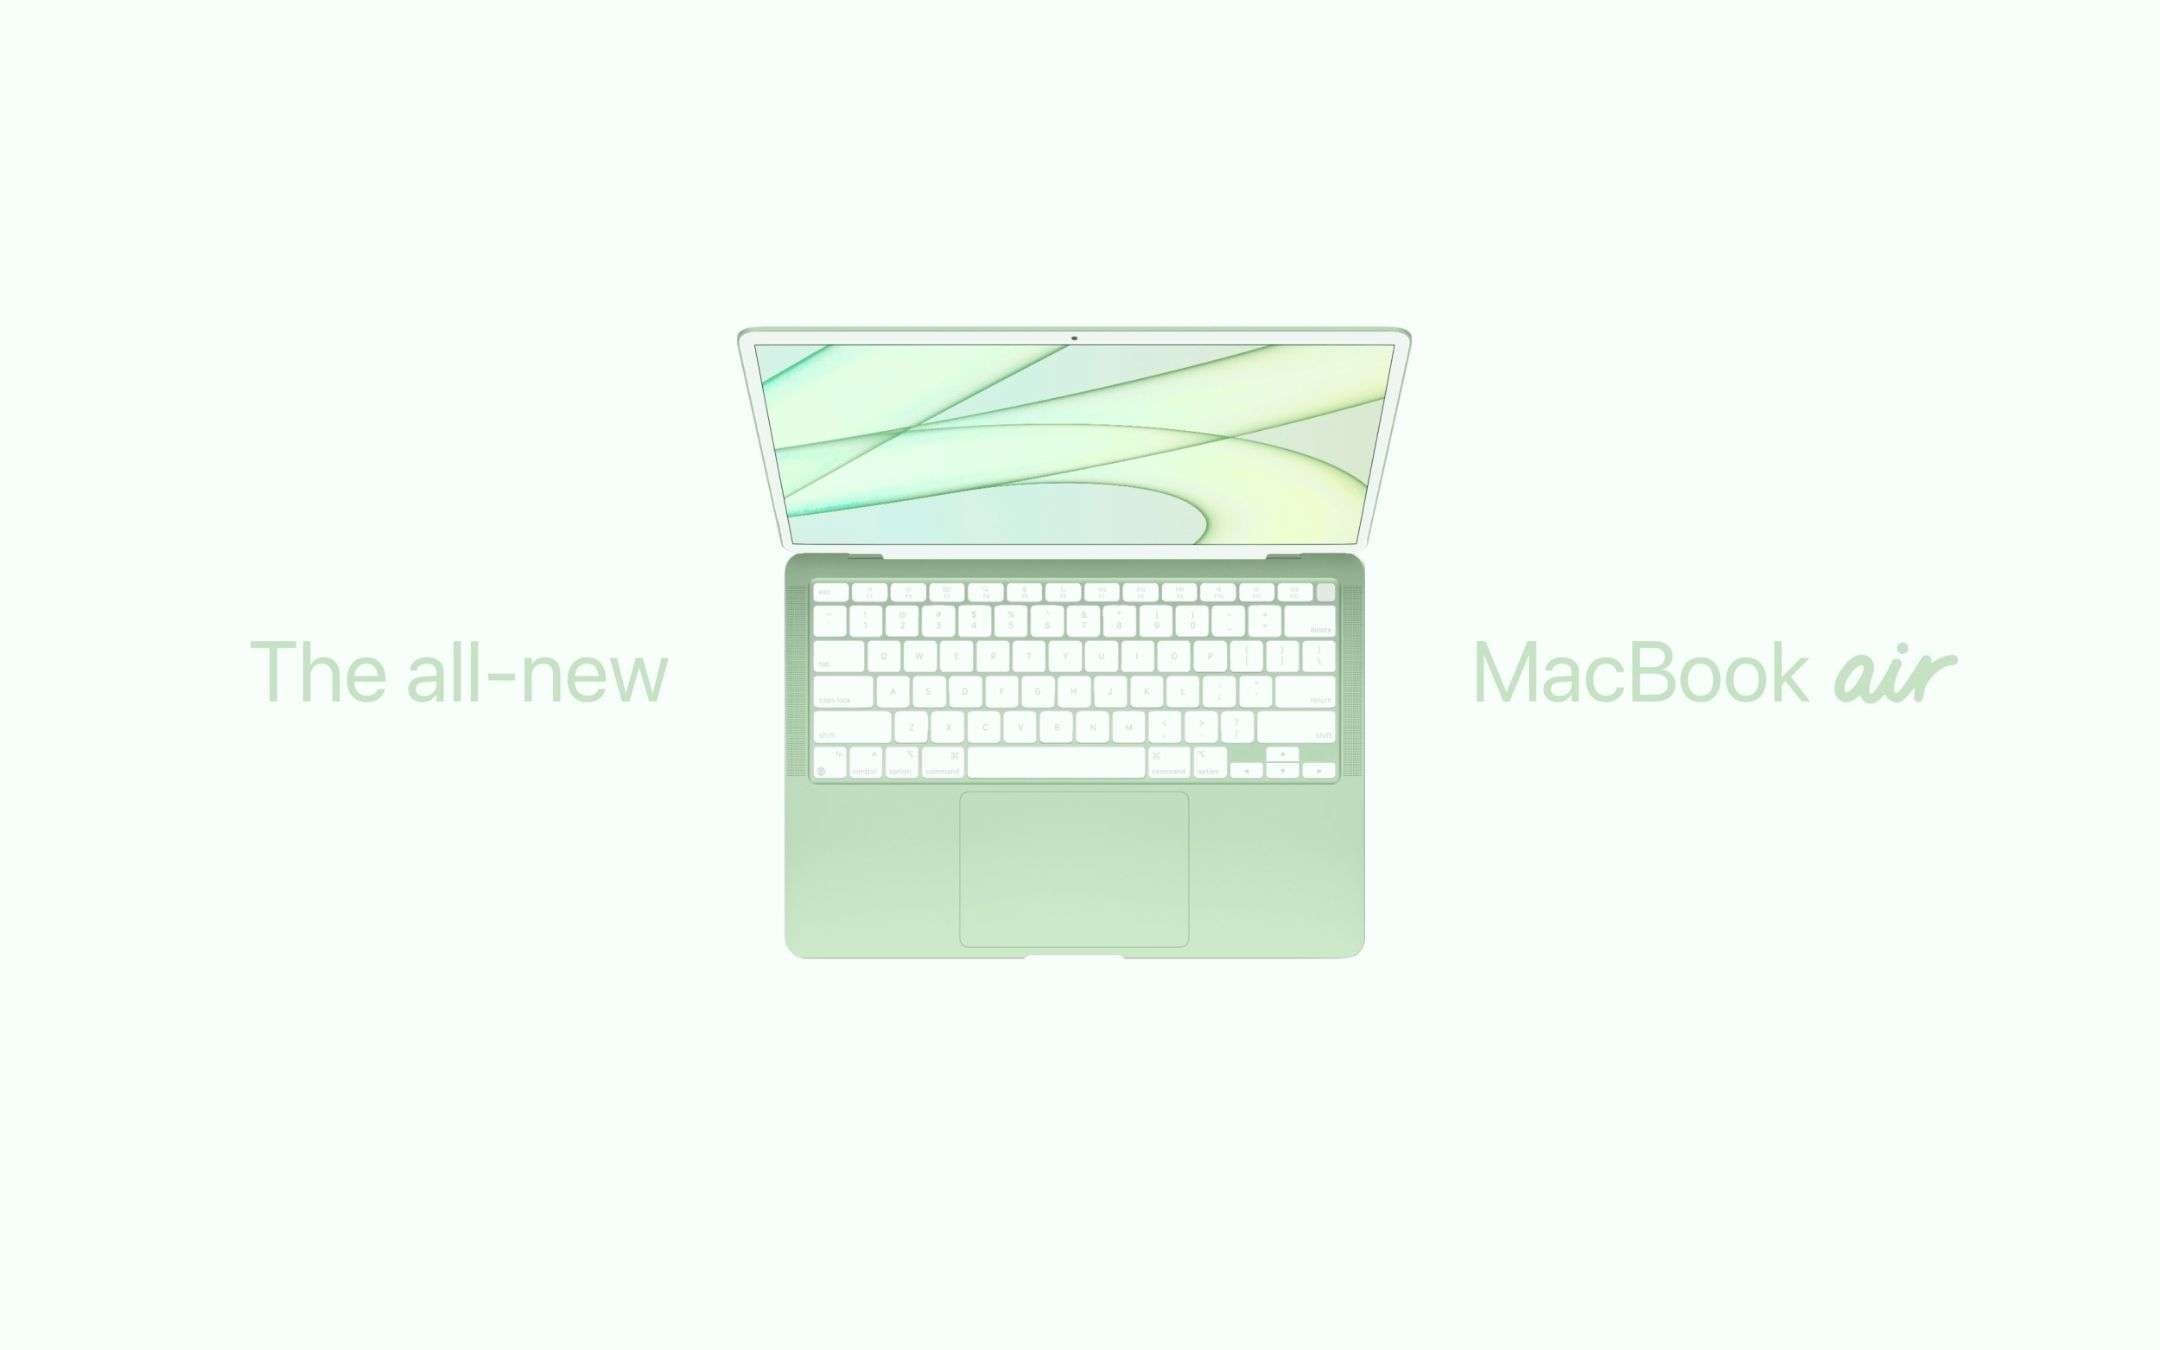 Il nuovo MacBook Air non arriverà presto, purtroppo